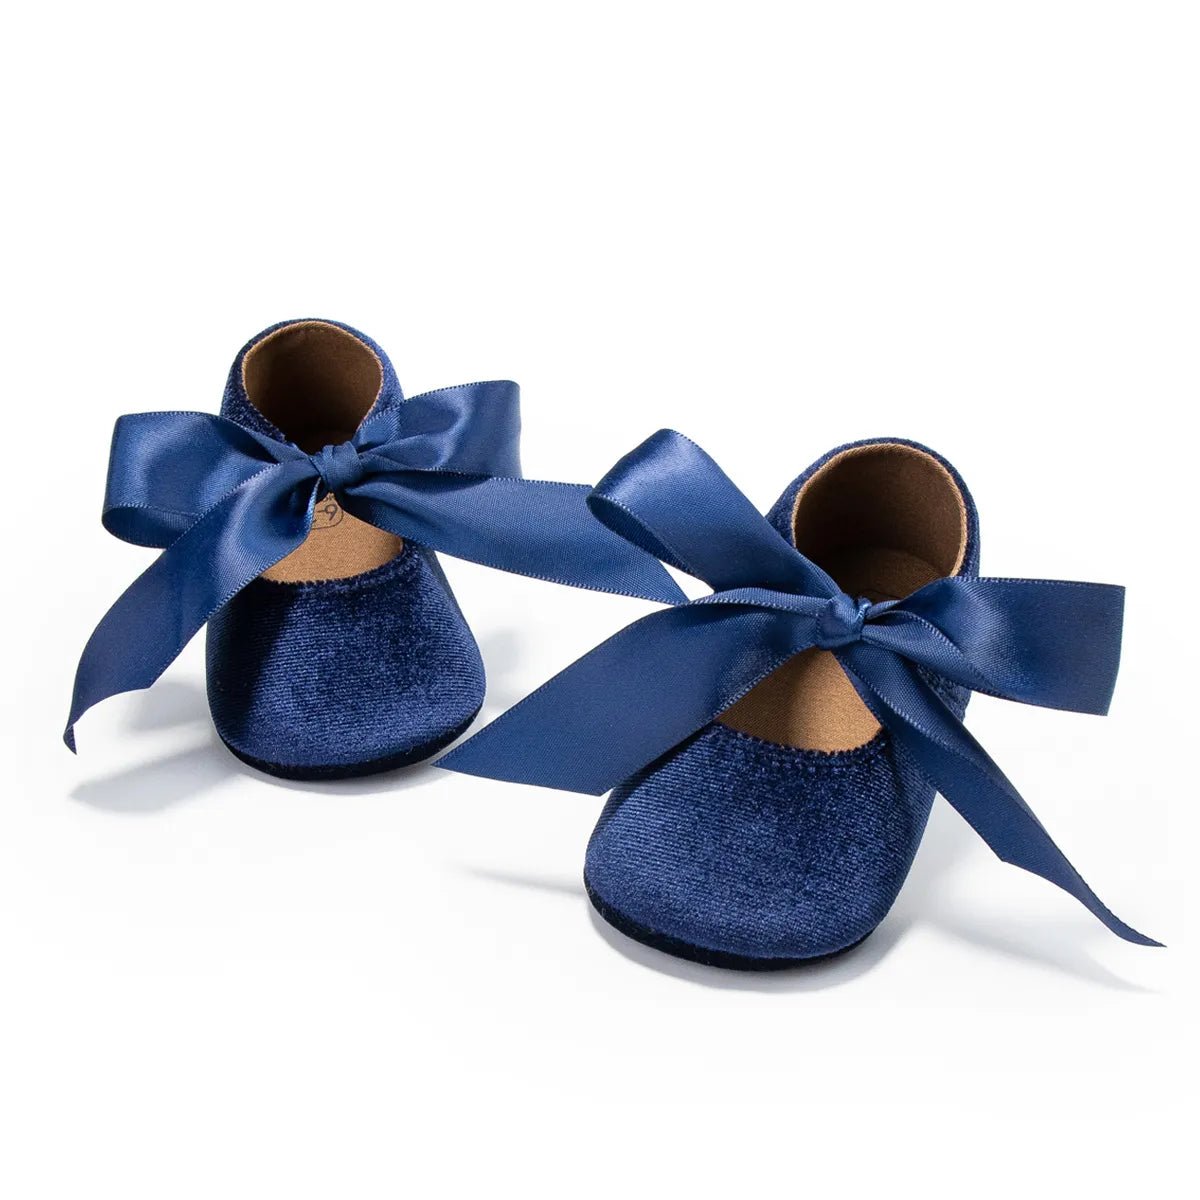 Chaussures de princesse pour bébés - bebemam.com